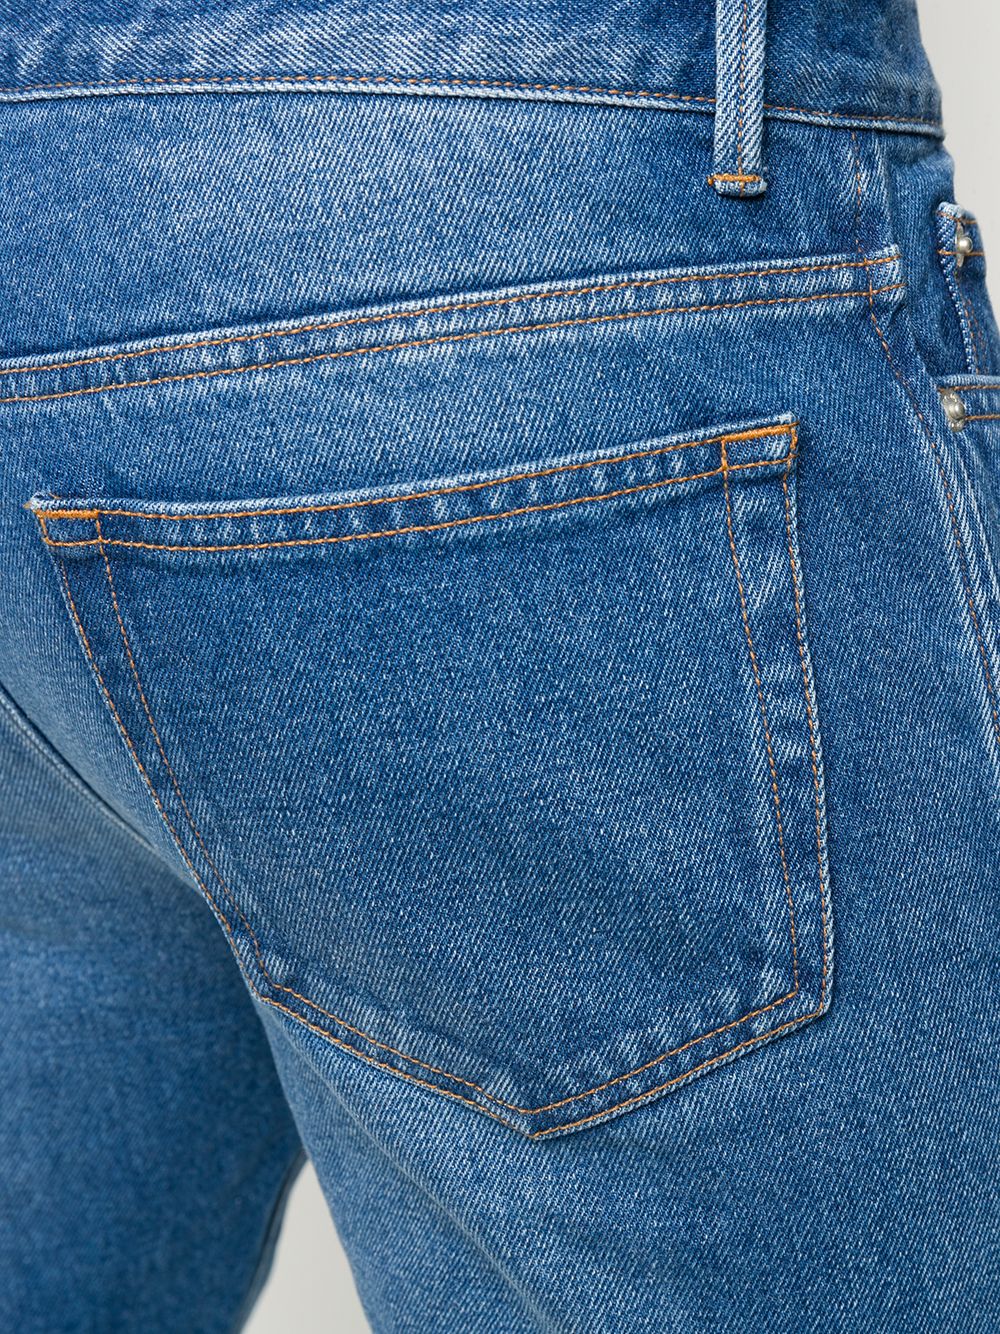 фото Officine generale джинсы прямого кроя с эффектом потертости